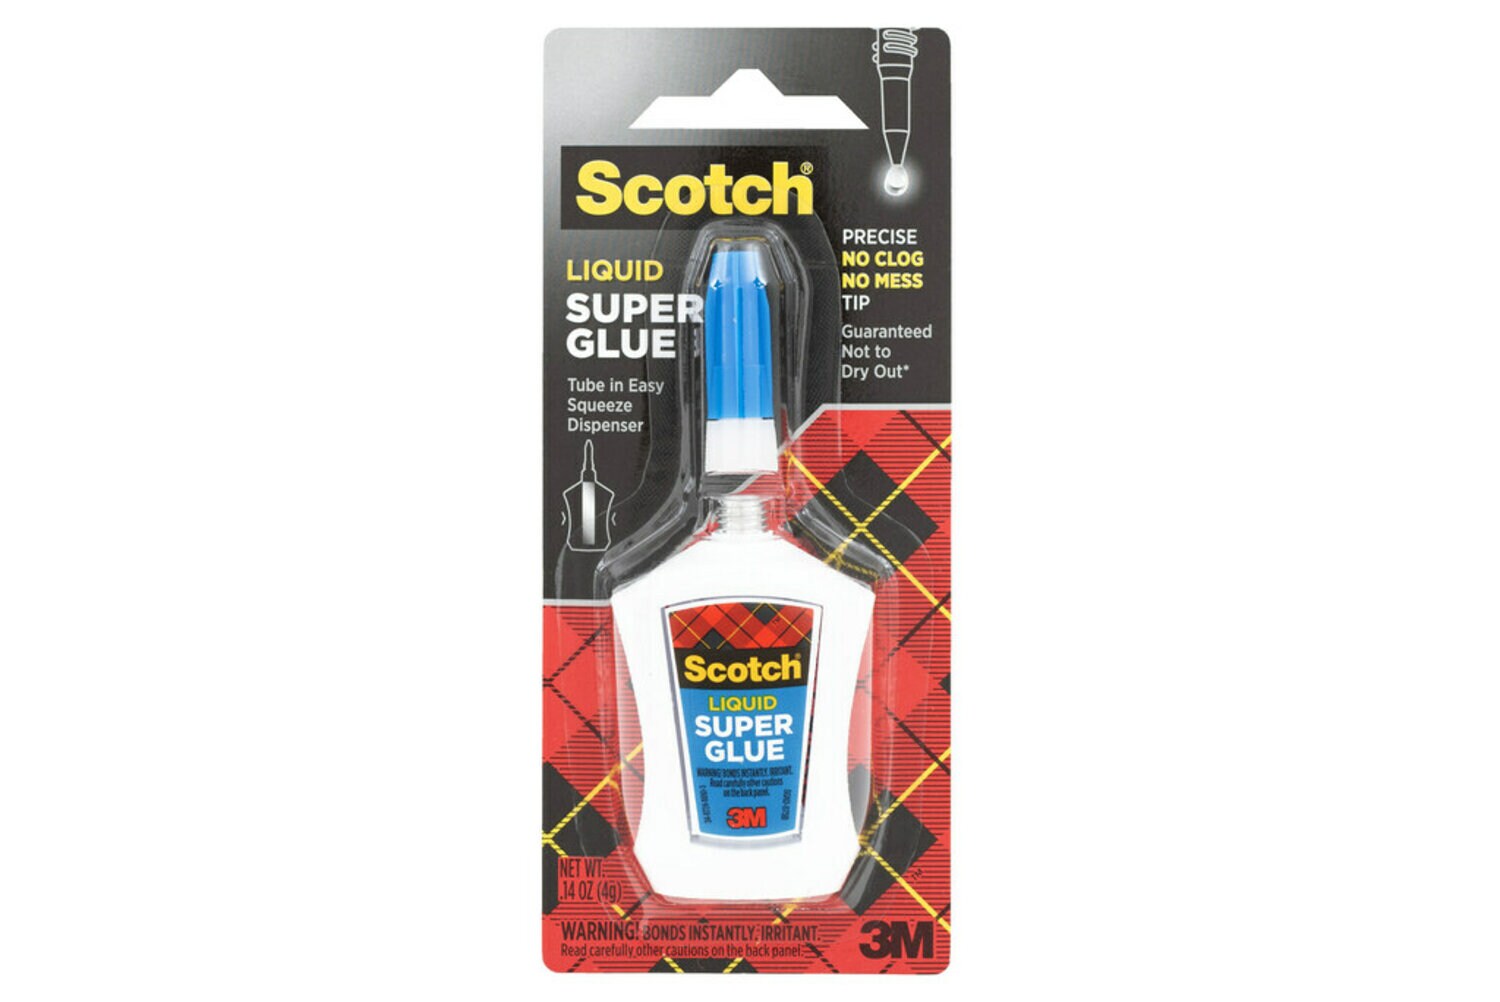 7100045780 - Scotch Super Glue Liquid in Precision Applicator, AD124, .14 oz (4 g)